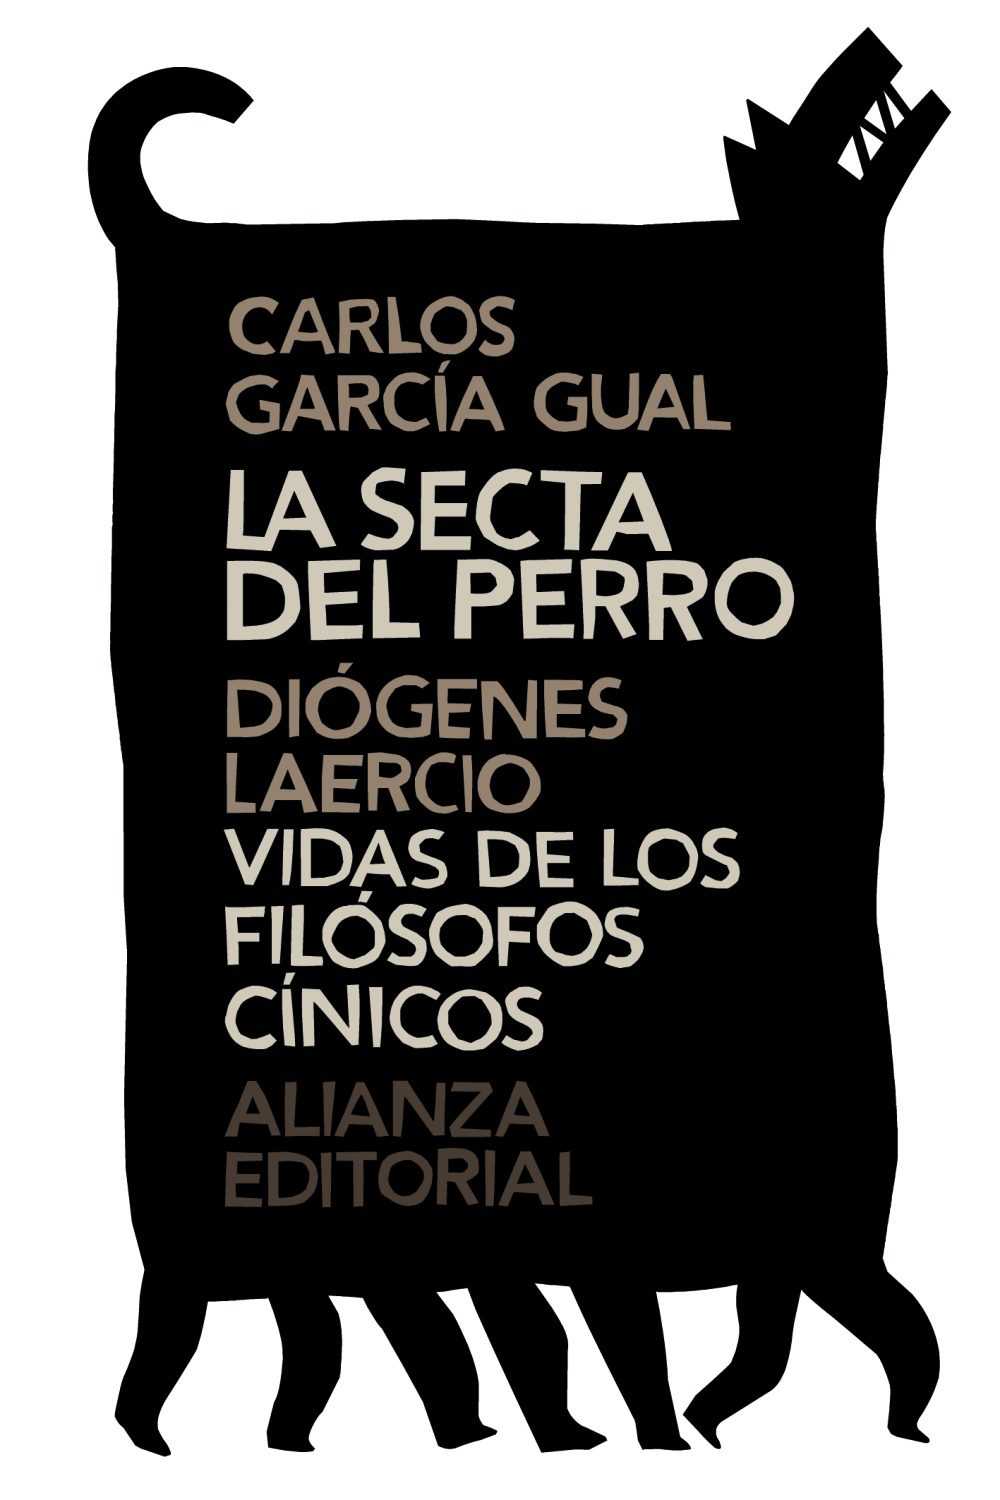 La secta del perro / Carlos García Gual; Vidas de los filósofos cínicos / Diógenes Laercio